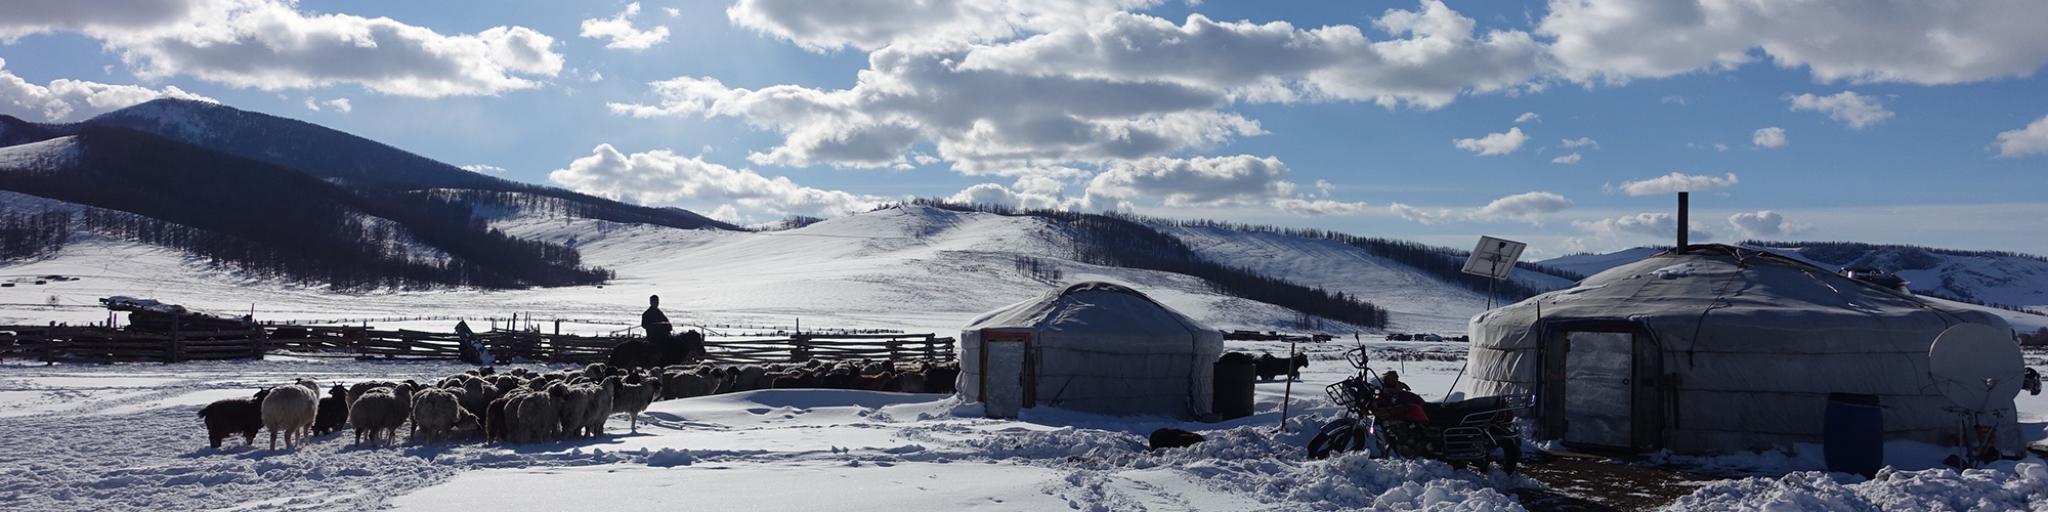 Mongolian settlement in snow